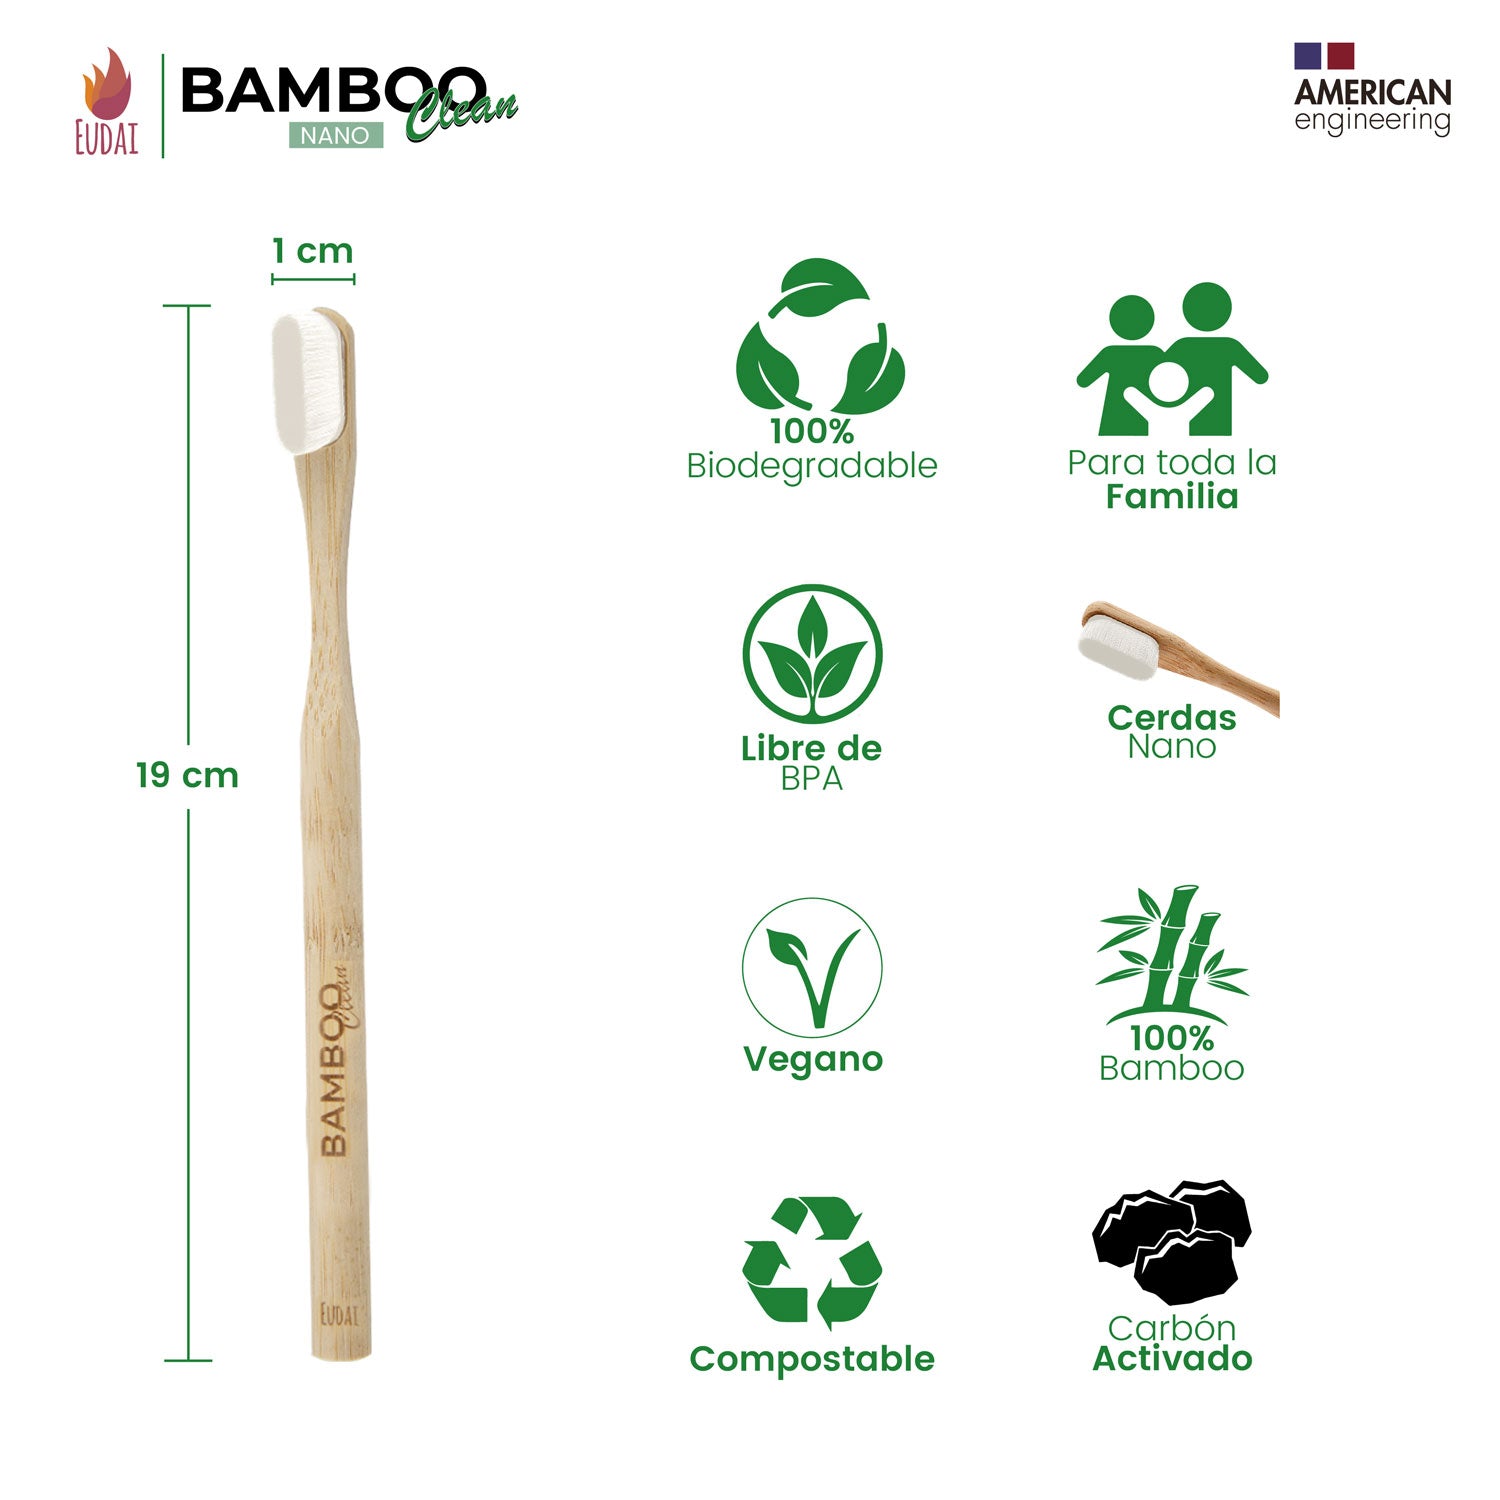 Bamboo Clean Nano 4 Cepillos de Dientes de Bambú con 20.000 Cerdas Nano Suaves sin BPA